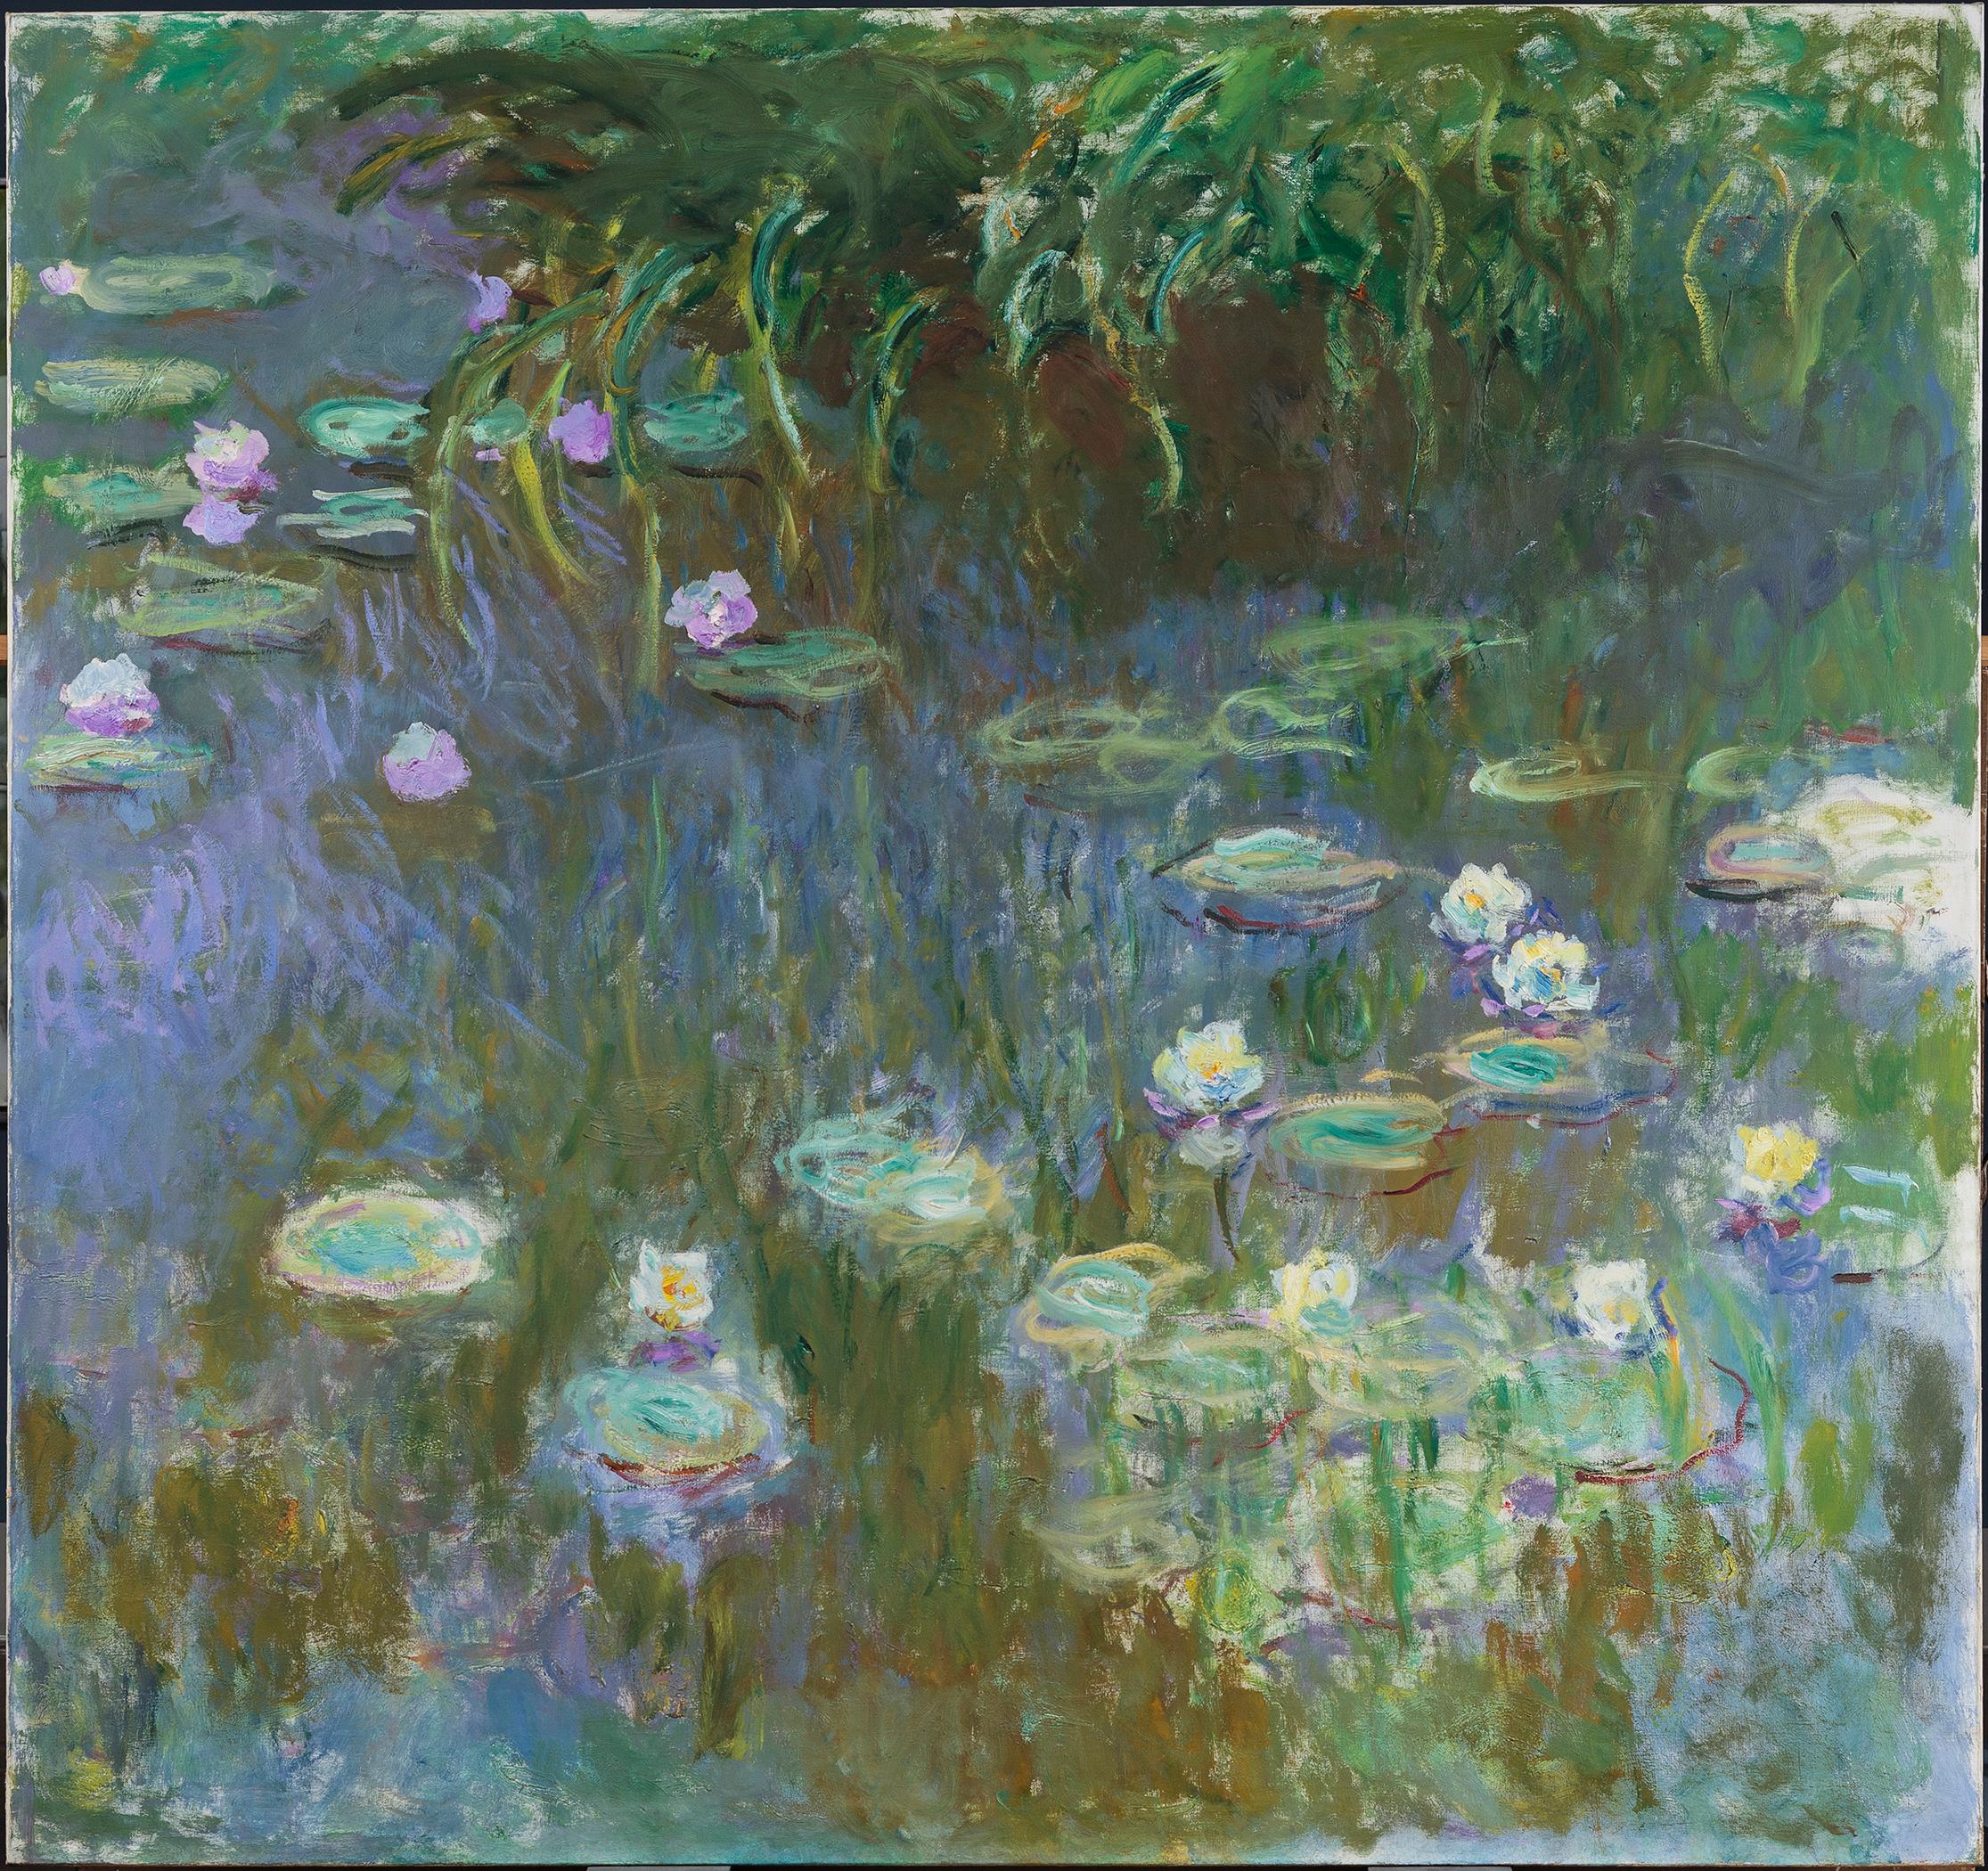 Water Lilies by Claude Monet - 1922 - 213.3 x 200 cm Toledo Museum of Art